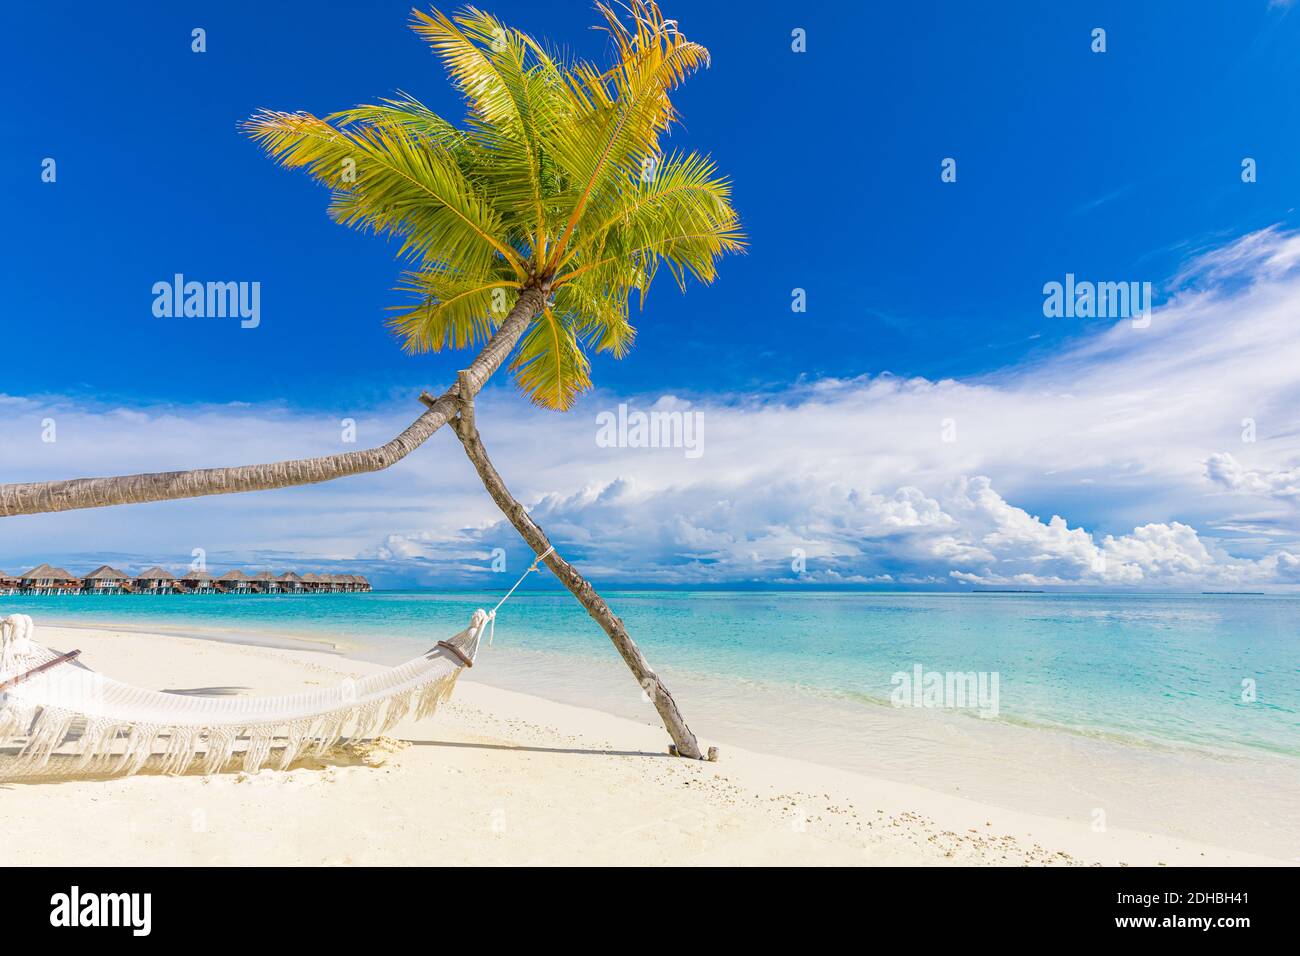 Plage tropicale comme paysage d'été. Idéal pour des vacances sur la plage et un concept de vacances d'été. Balançoire de plage ou hamac et sable blanc et calme Banque D'Images